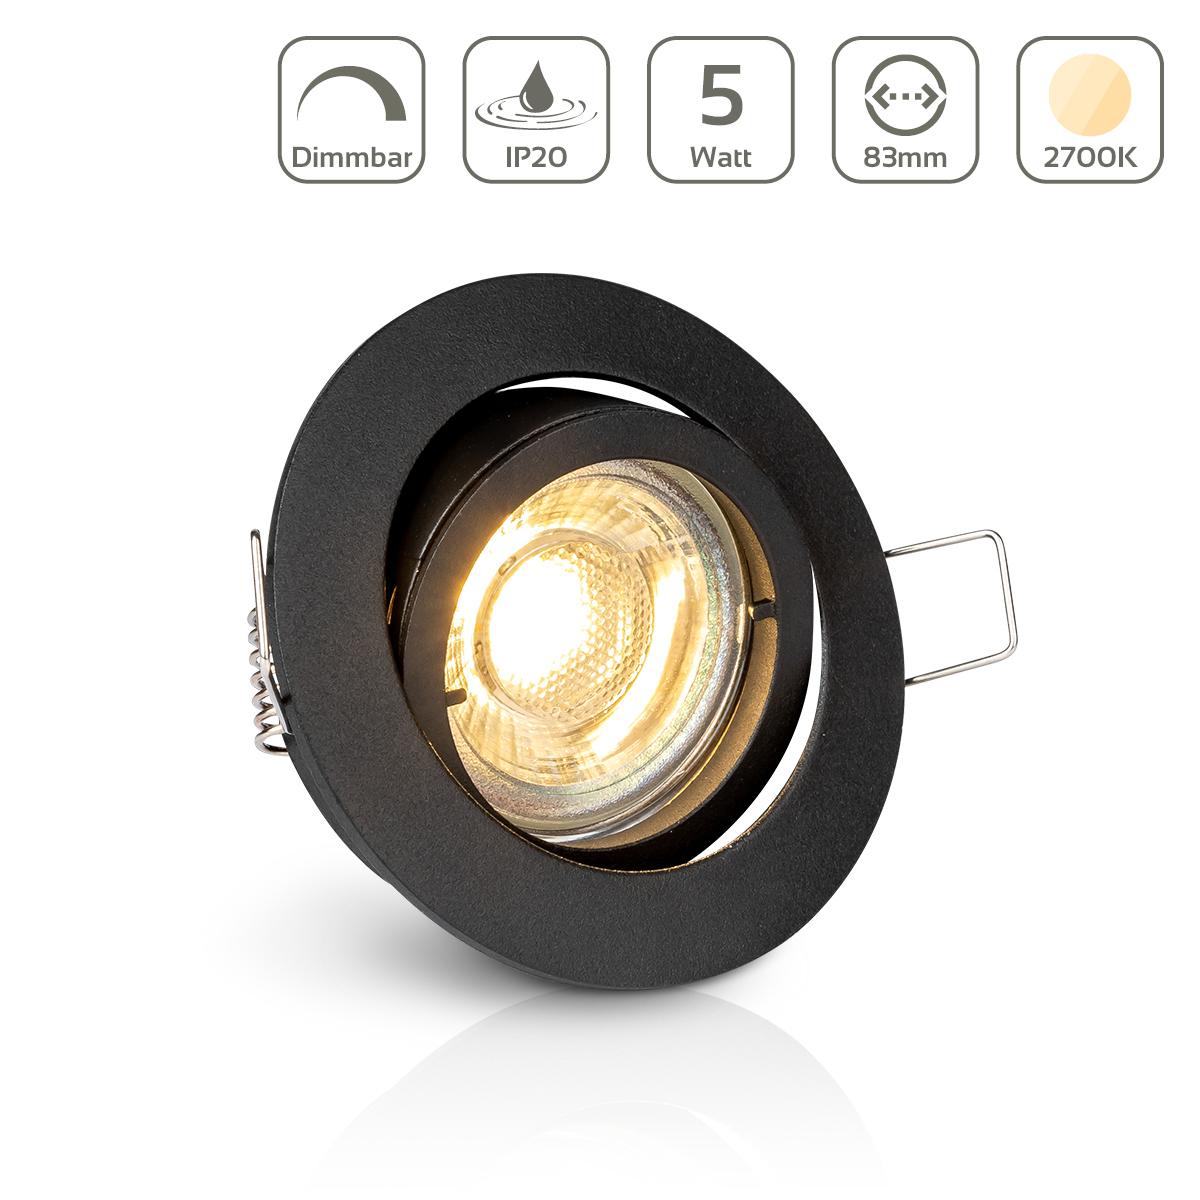 Einbauspot IP20 rund Bajonettverschluss - Farbe: schwarz - LED Leuchtmittel: GU10 5W warmweiß dimmbar